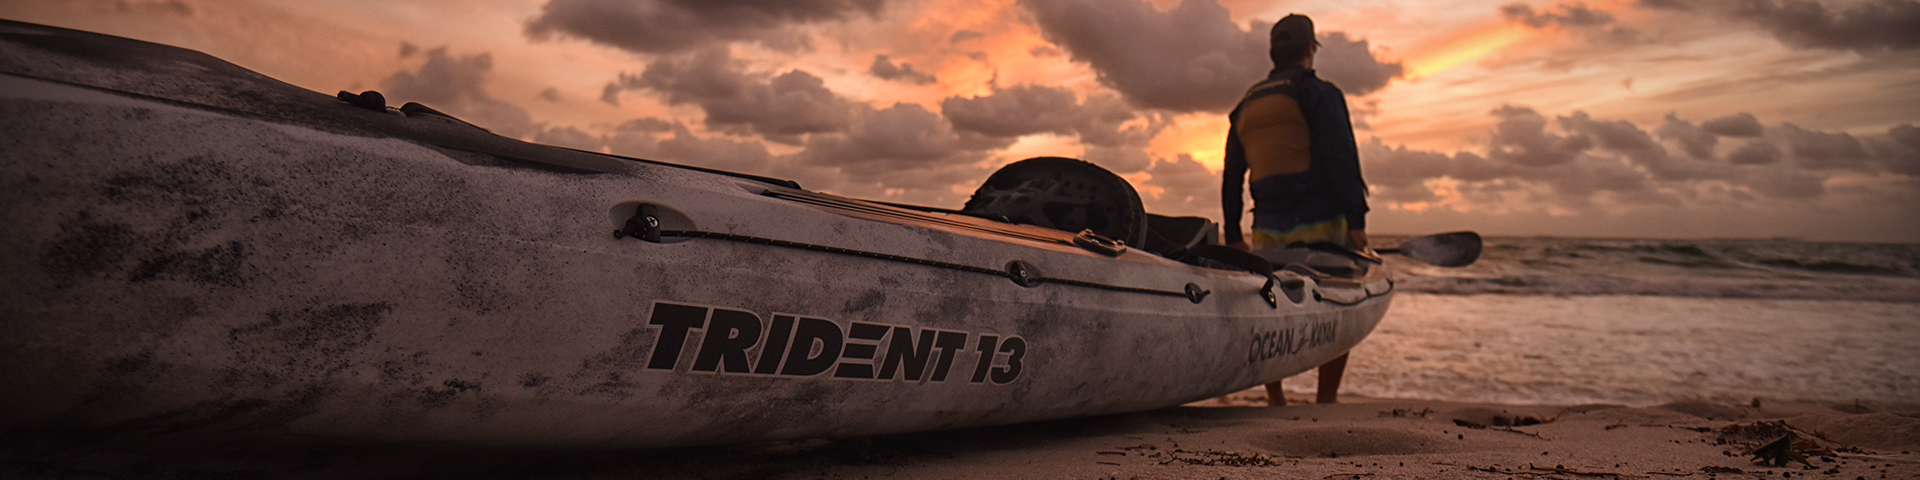 Kayaks: Trident 13 by Ocean Kayak - Image 4095